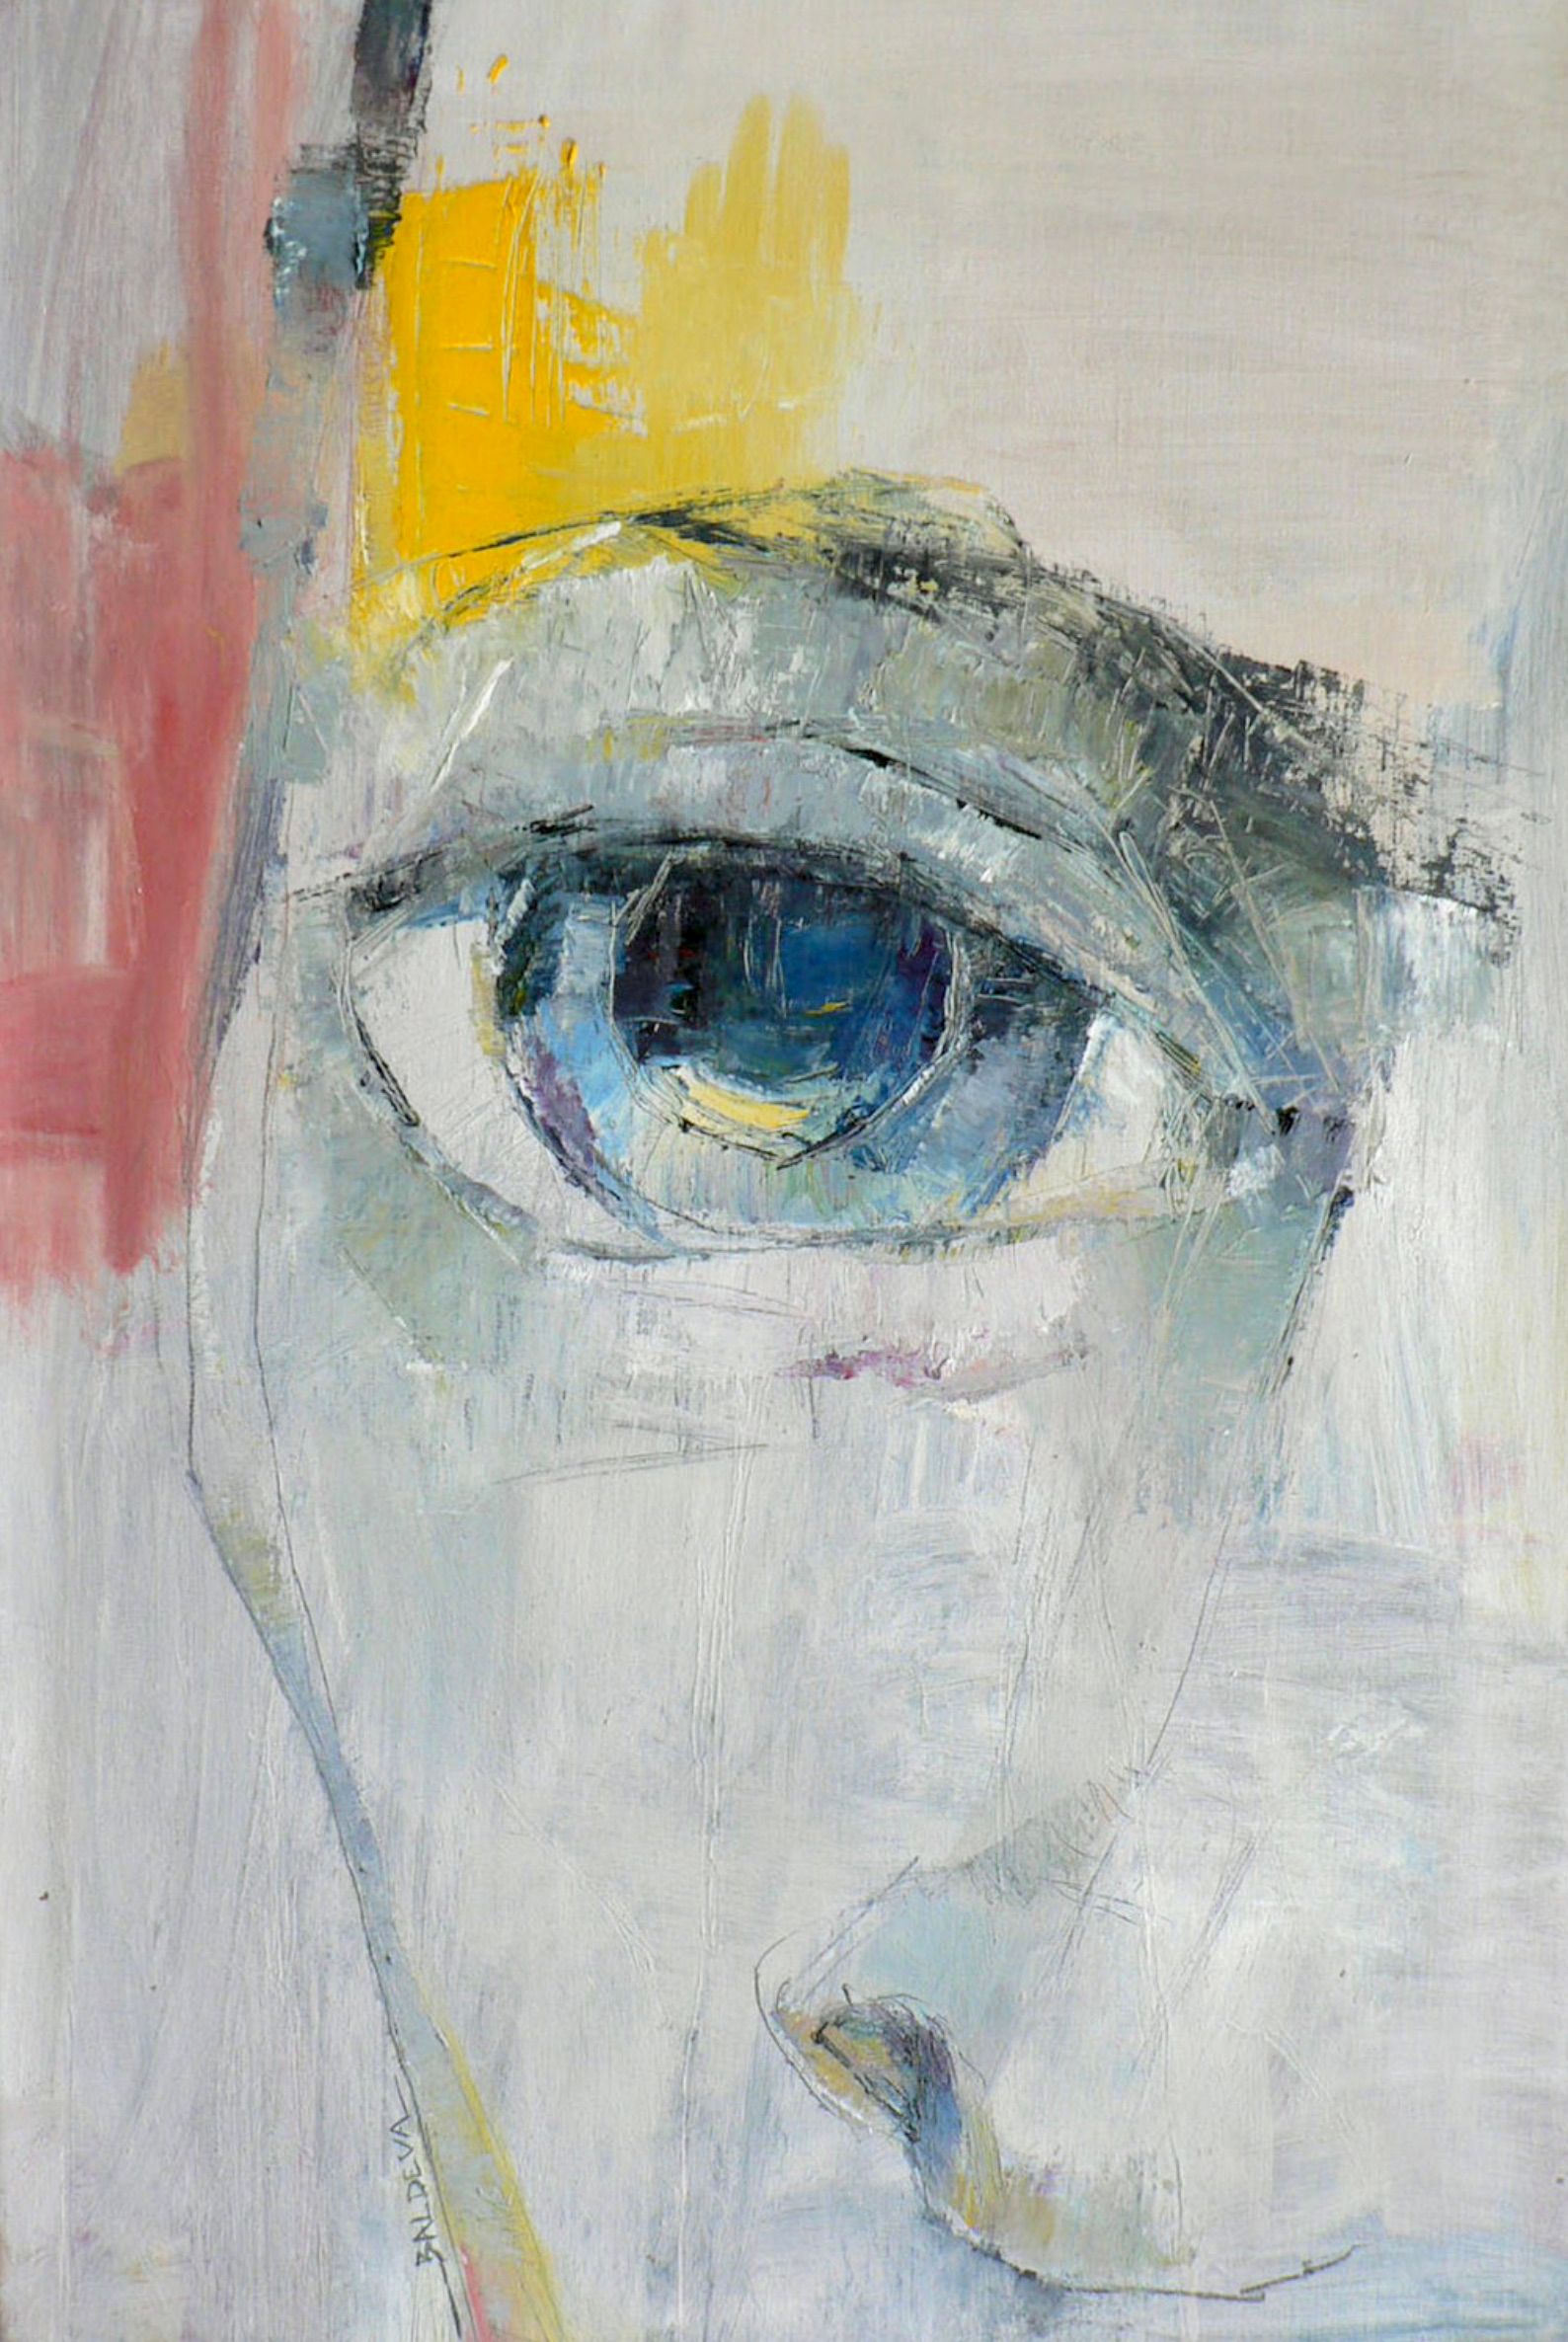 Sylvia Baldeva的 "Gros plan "展示了一幅油画作品。面部, 神情, 表情, 特写, 肖像